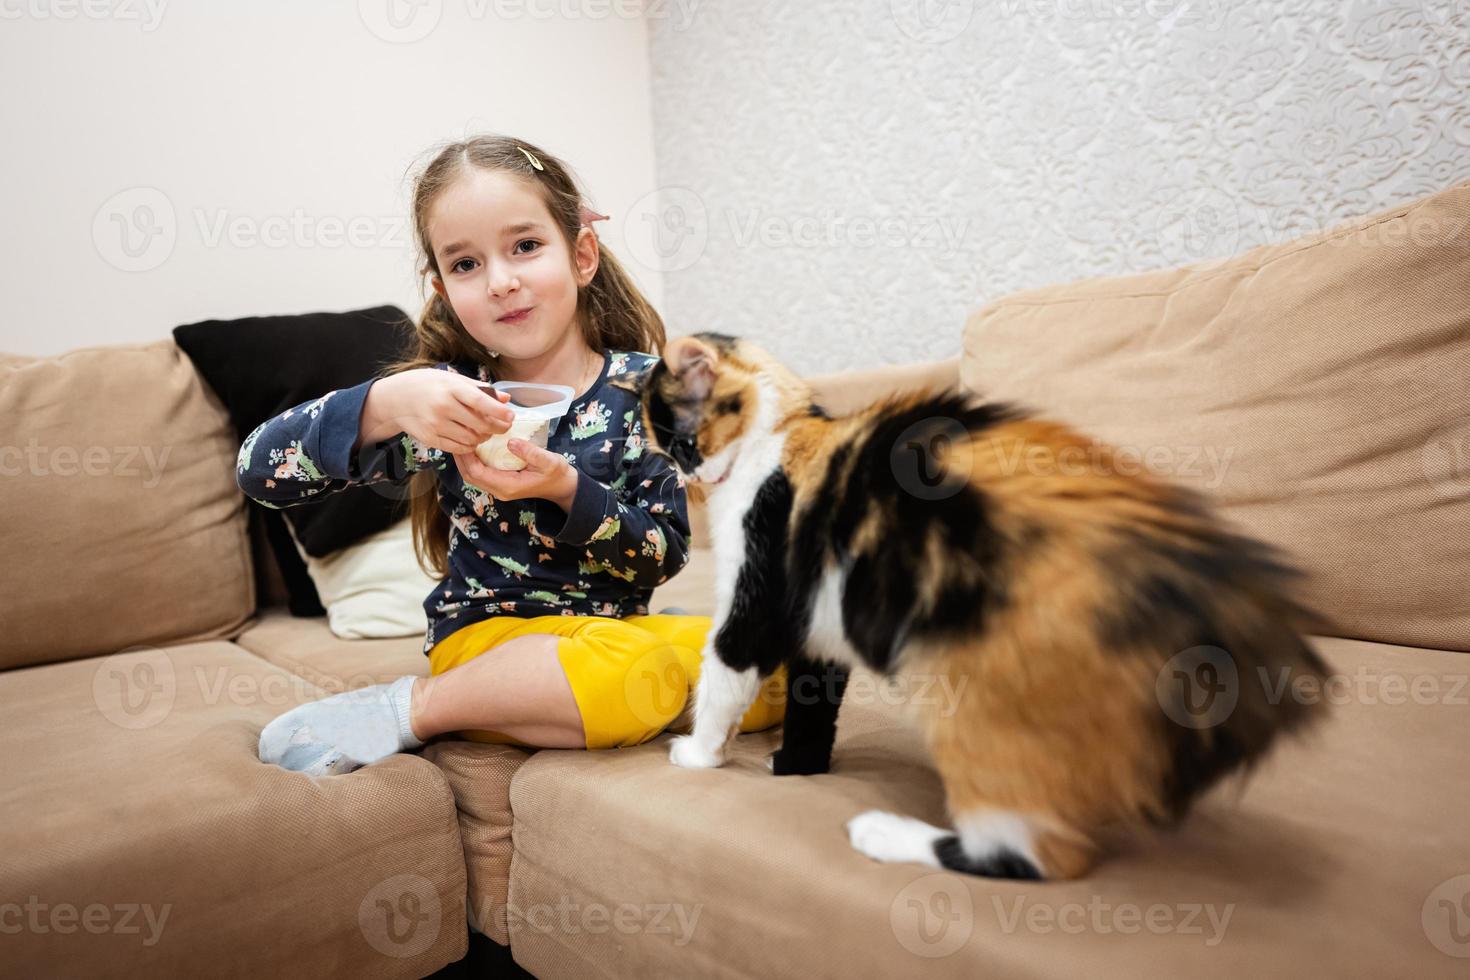 liten flicka utfodra de katt med yoghurt från en sked på Hem. foto